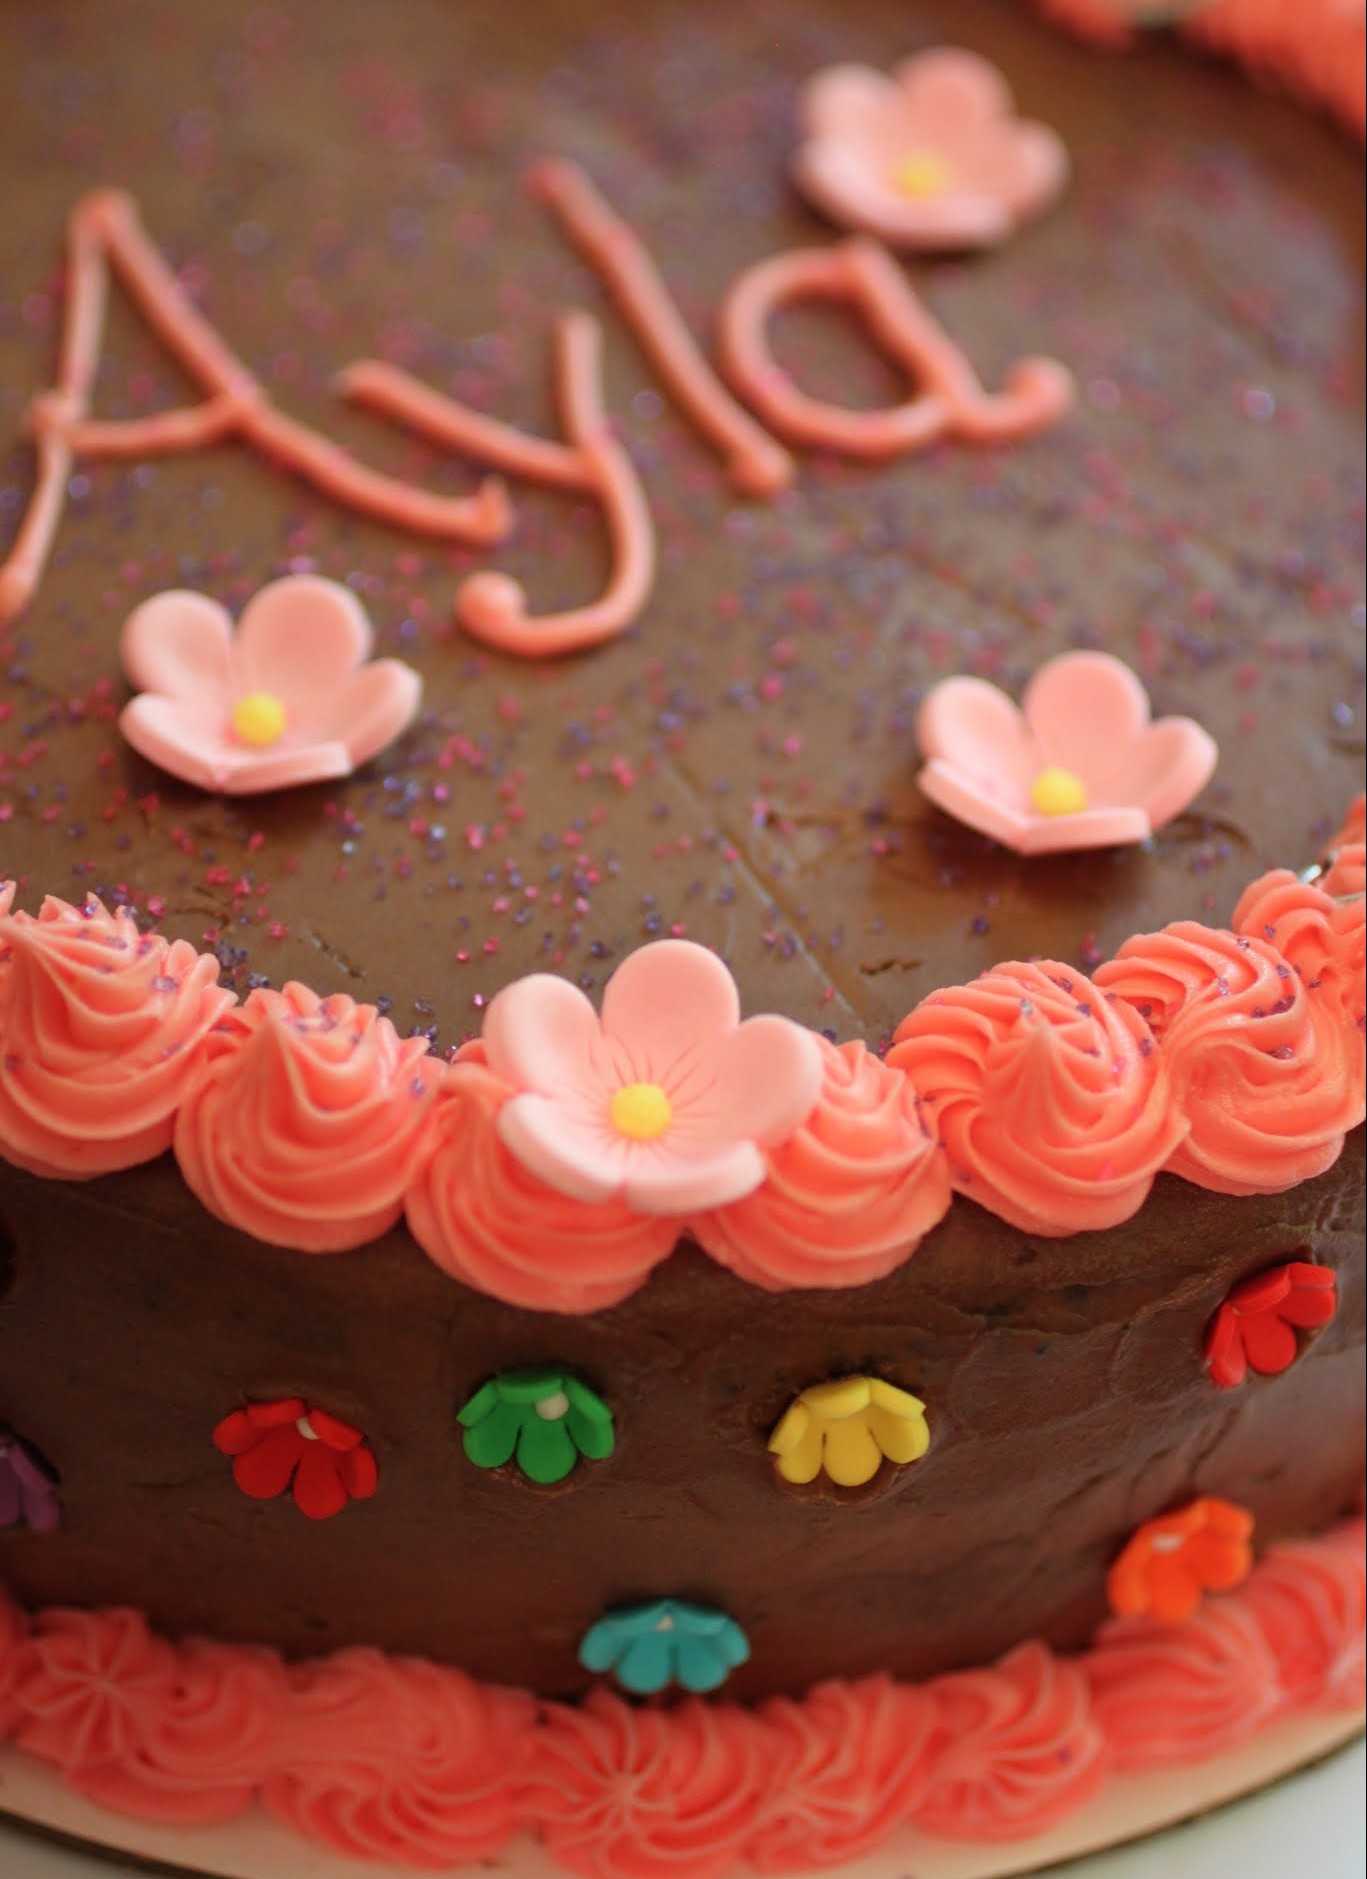 The Best (Gluten-Free) Chocolate Birthday Cake!